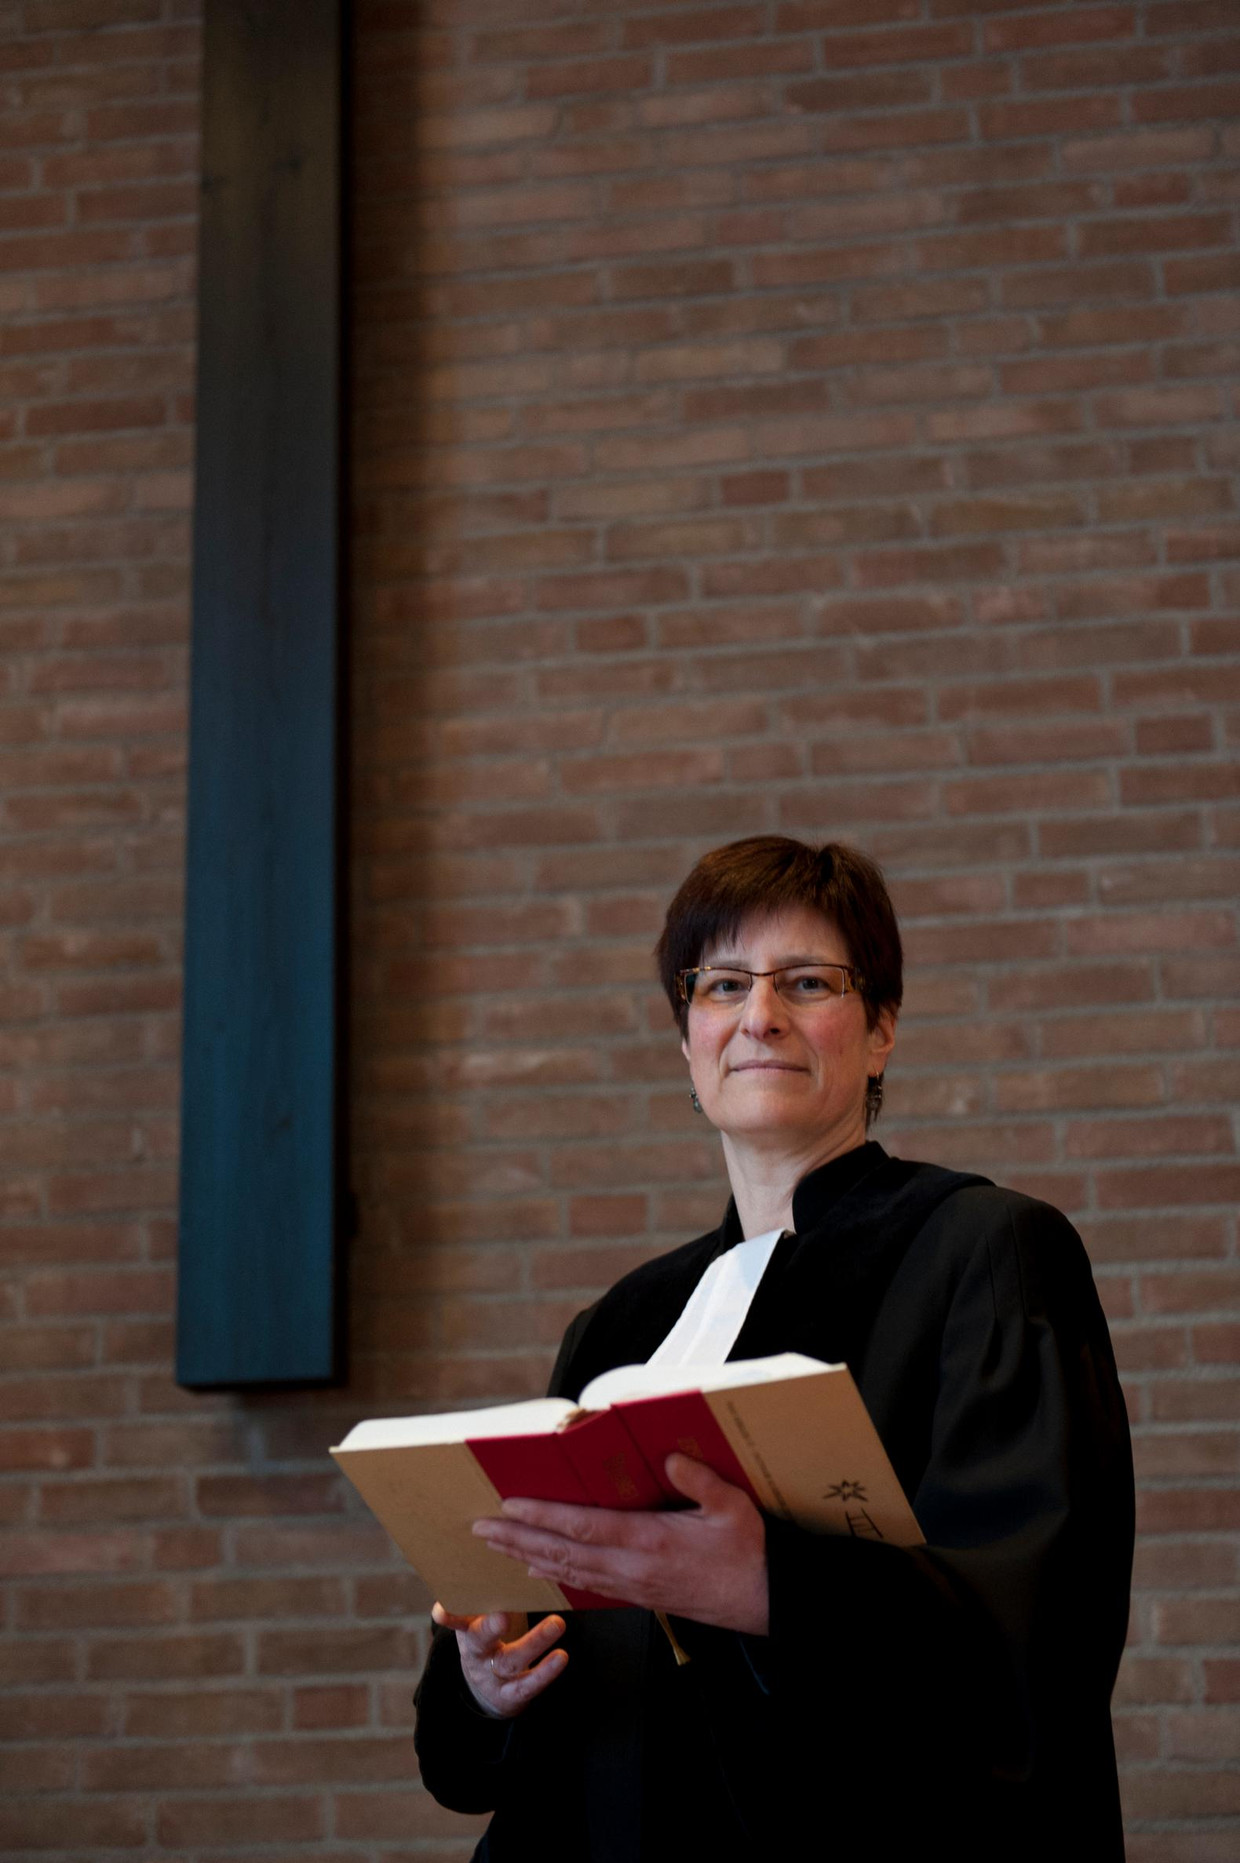 Karin van den Broeke, voorzitter van de generale synode (landelijke vergadering) van de Protestantse Kerk in Nederland (PKN) Beeld anp